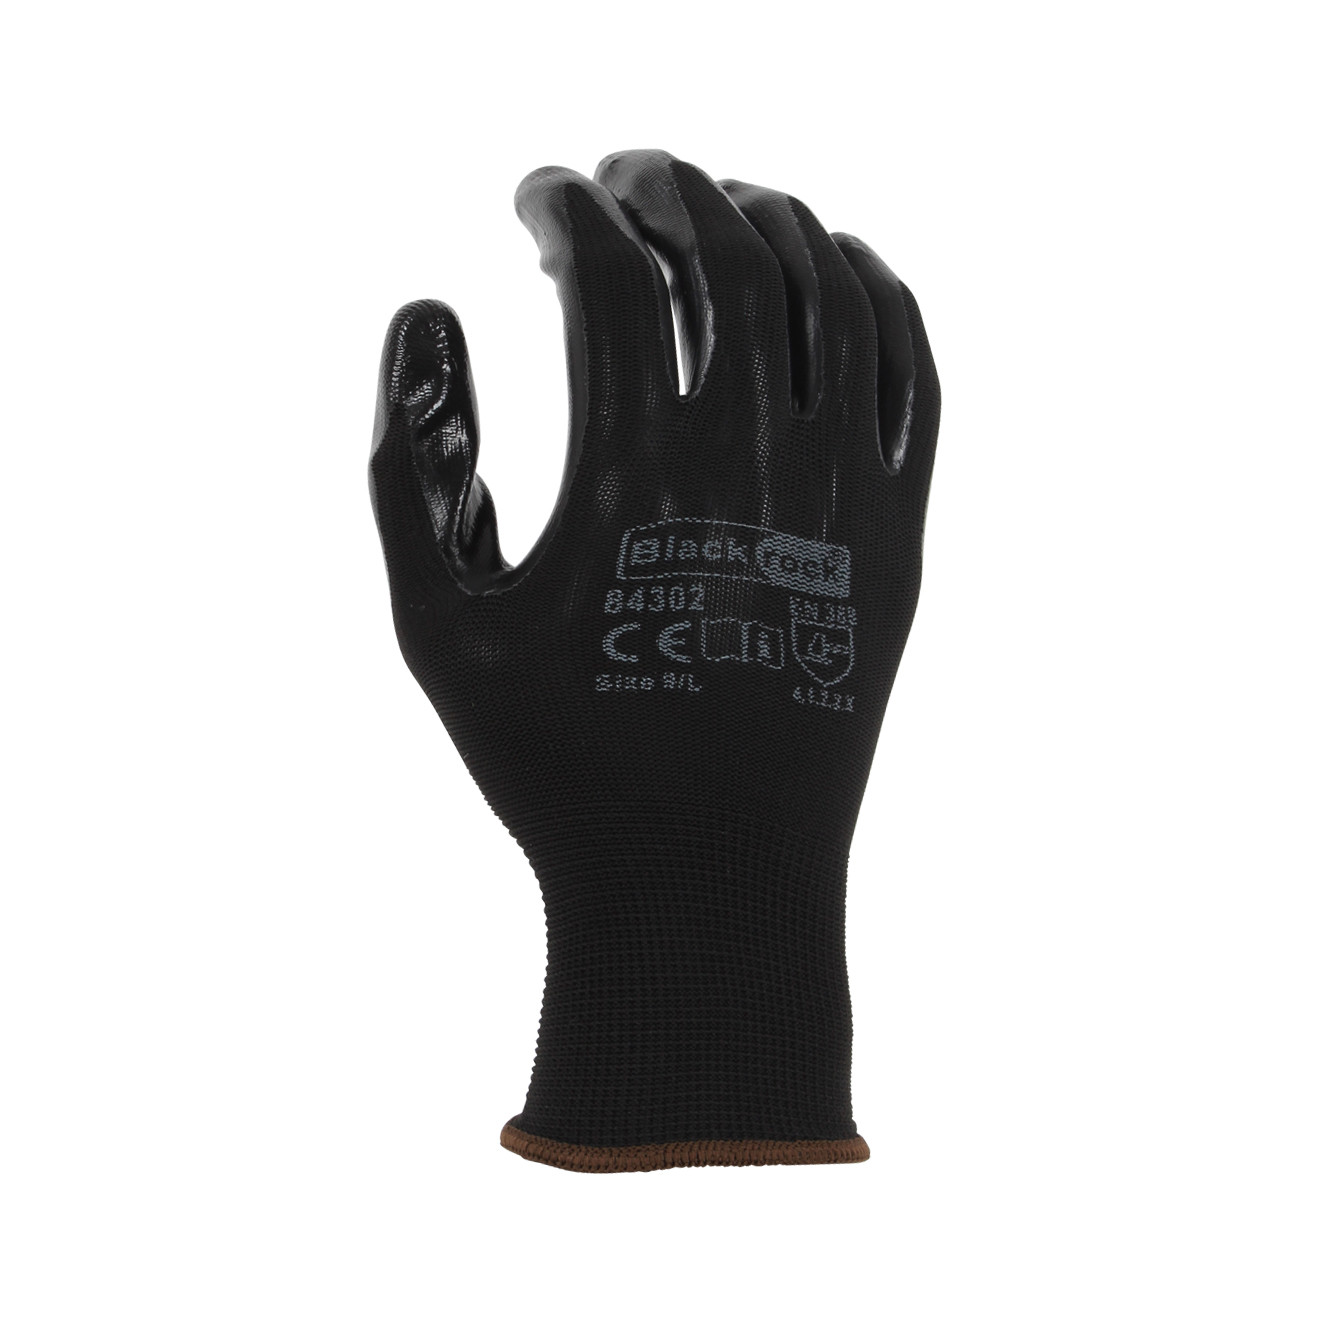 Super Grip Gloves